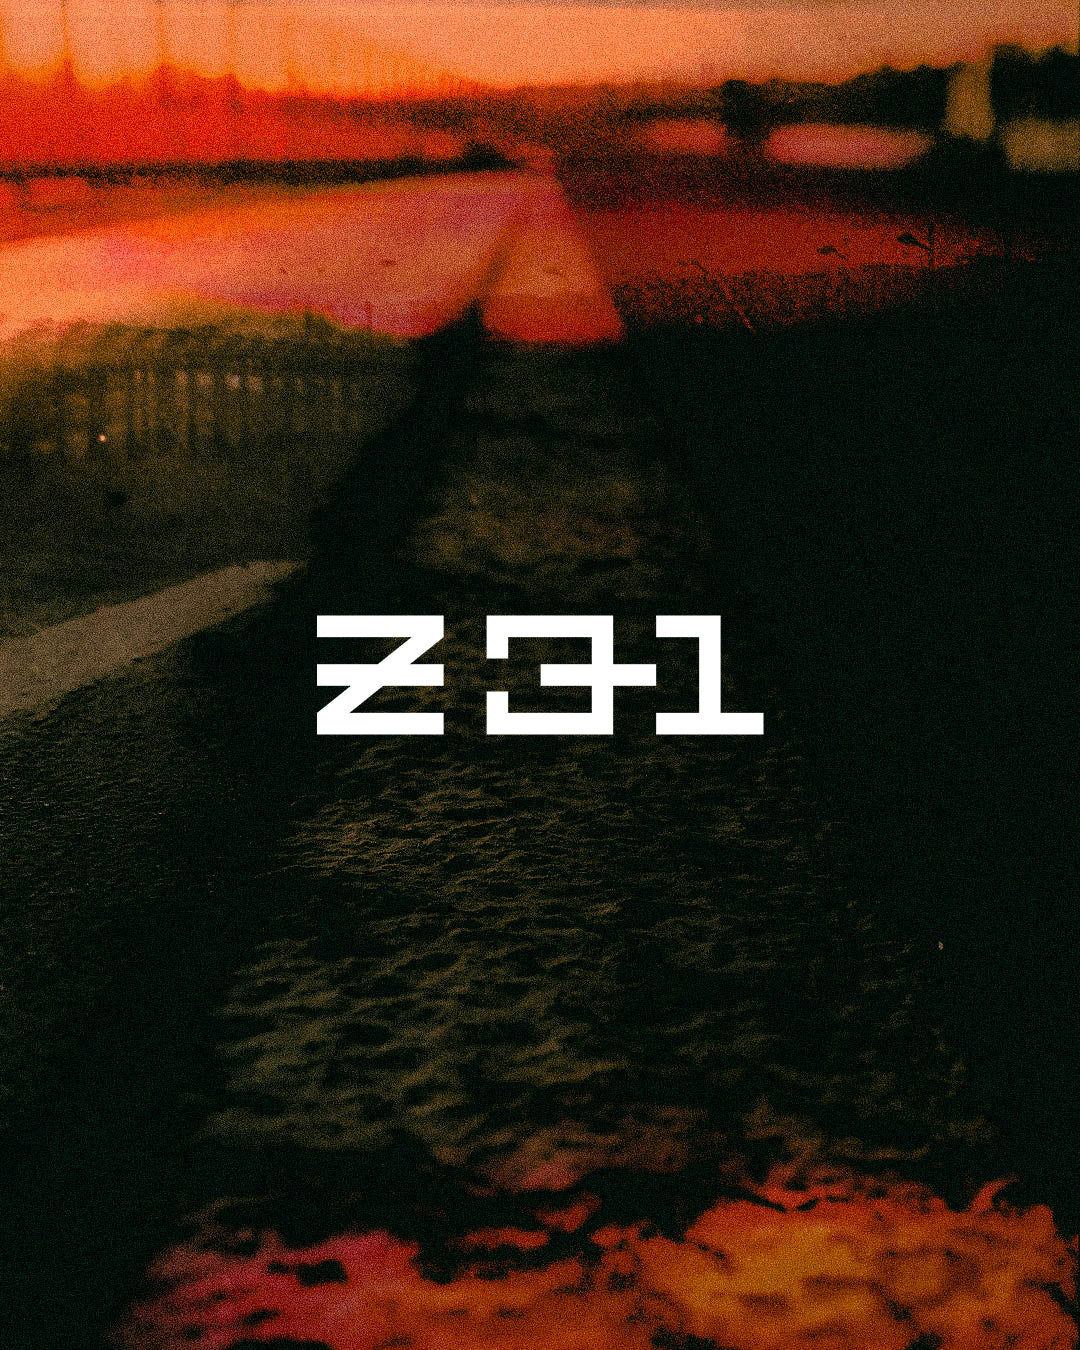 Z31